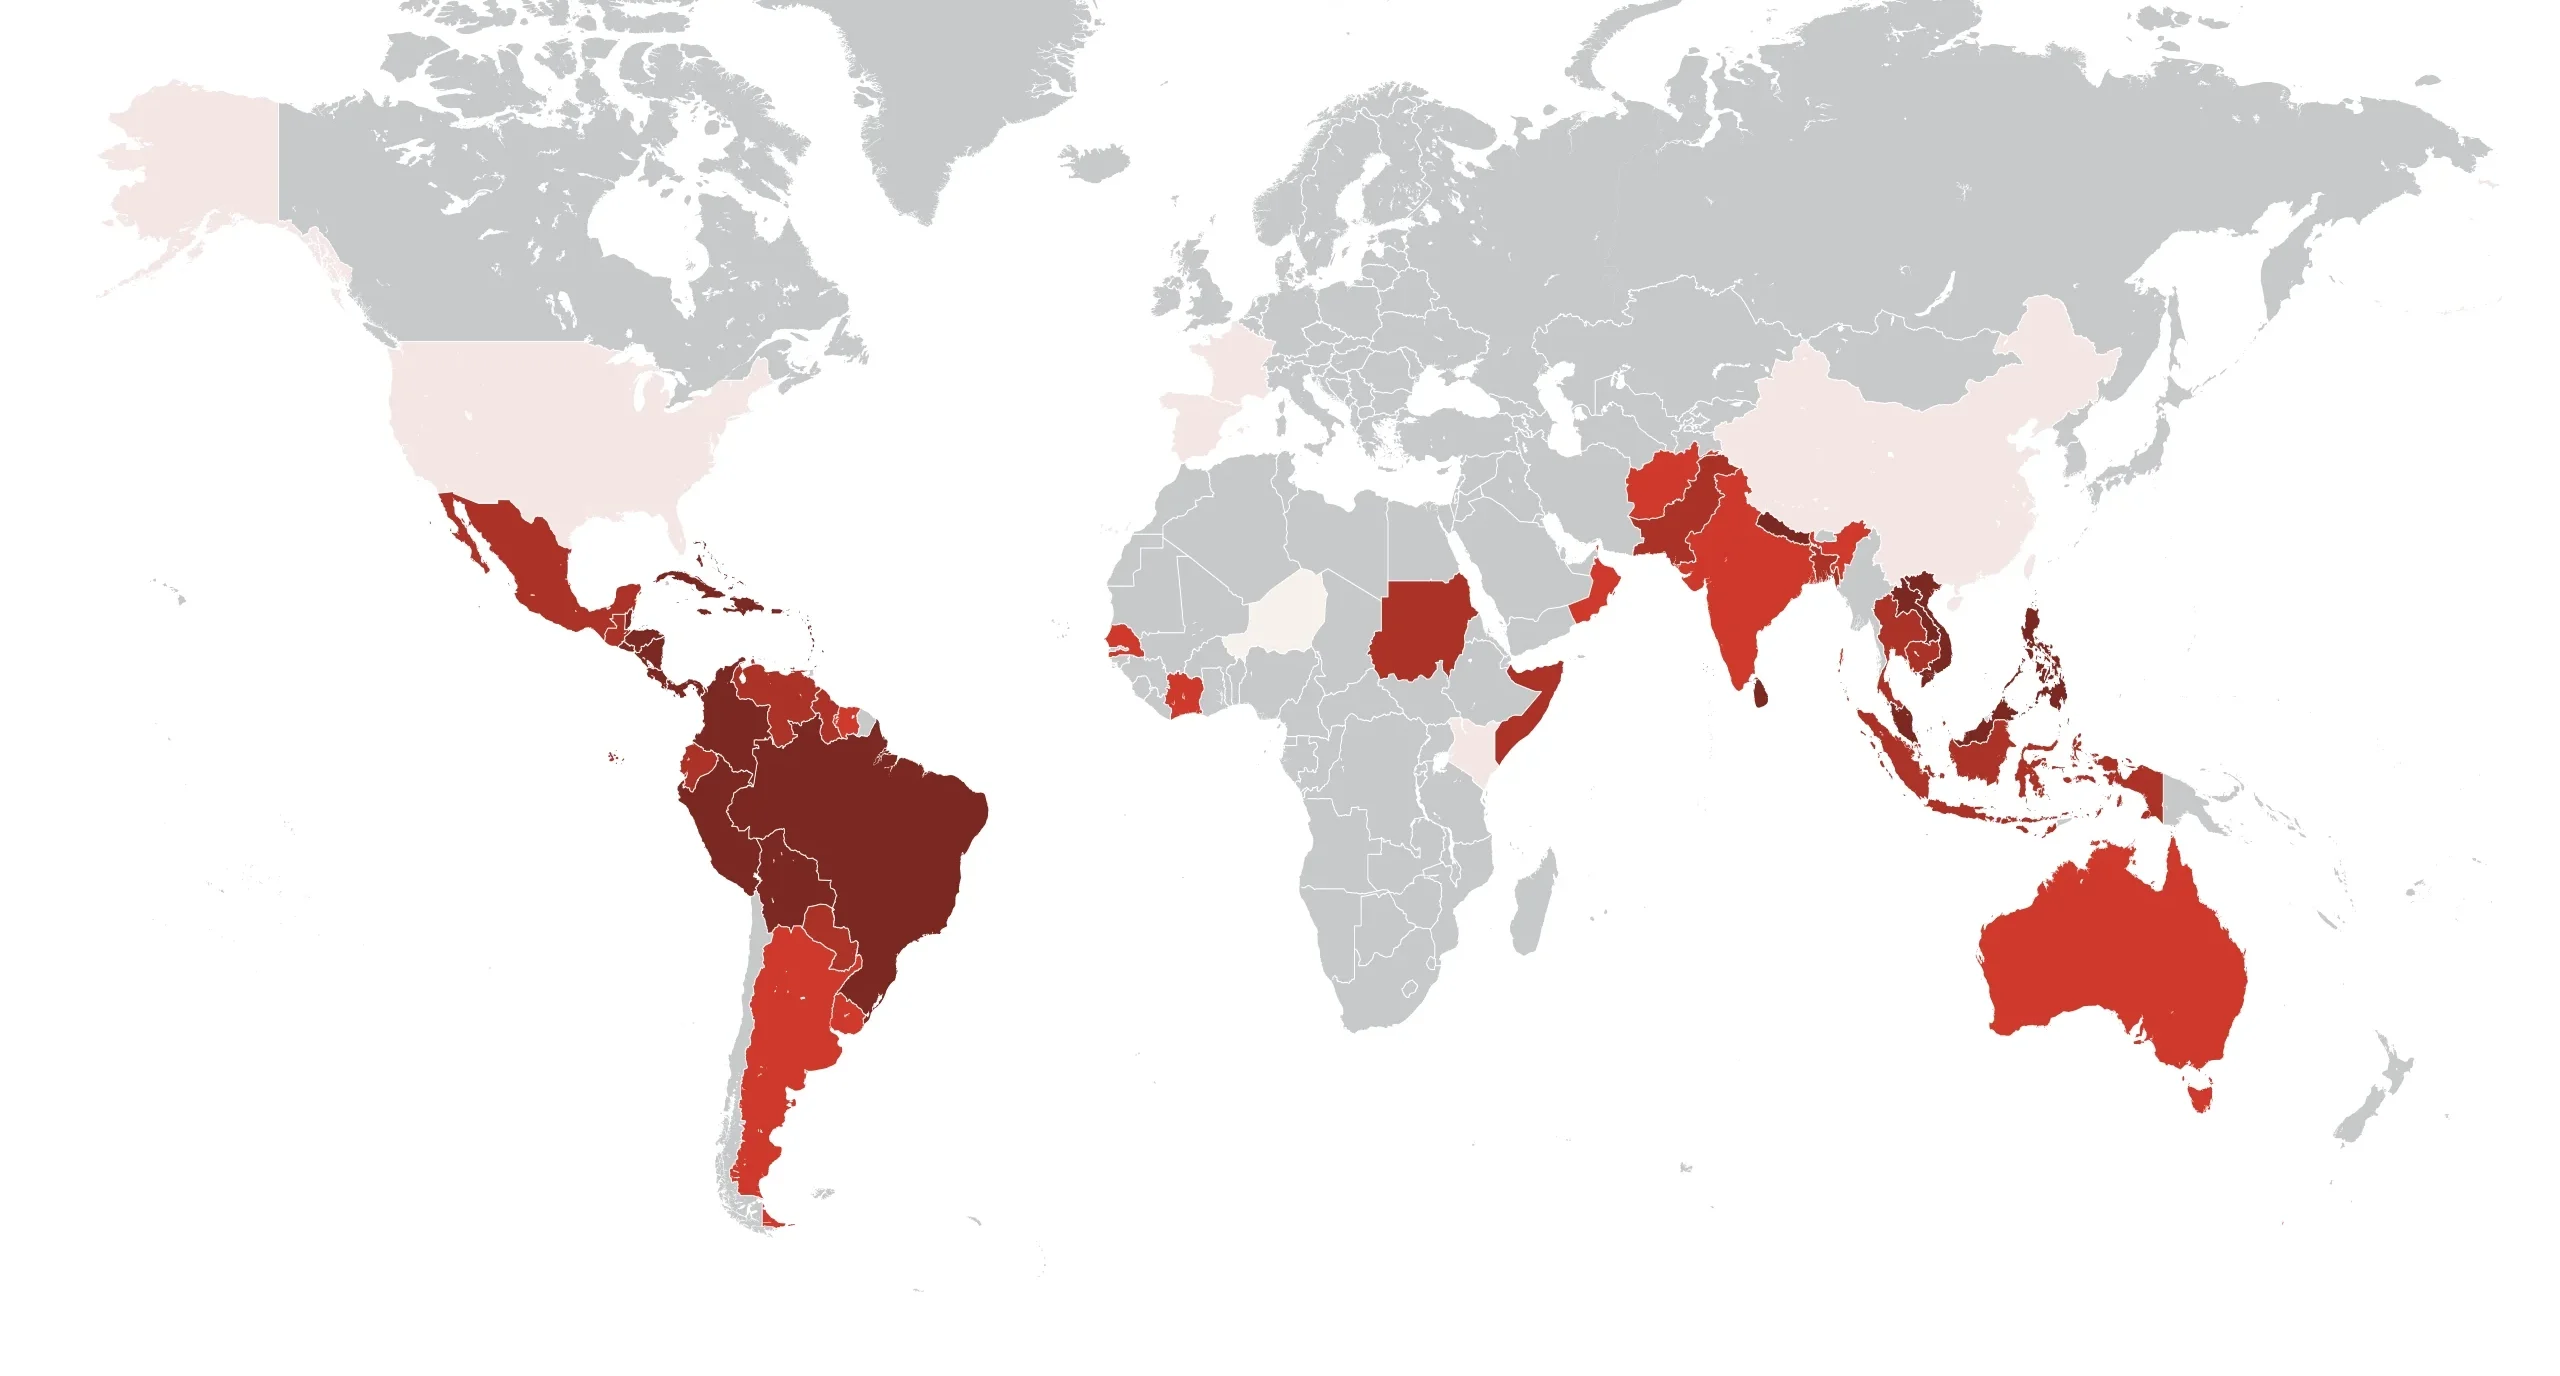 Verdenskort der viser risiko for dengue feber i forskellige lande